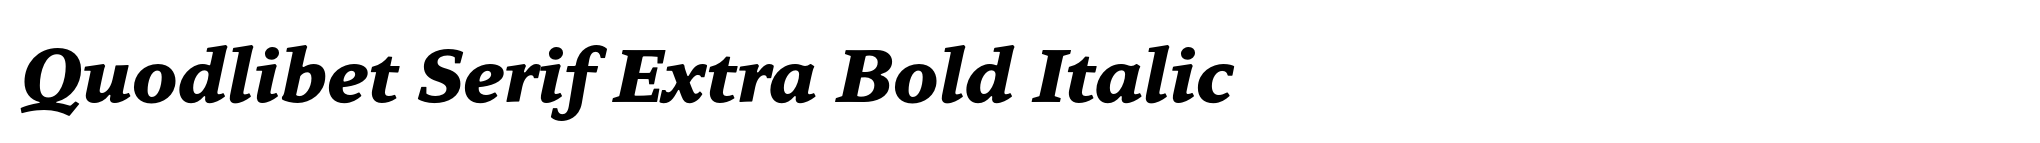 Quodlibet Serif Extra Bold Italic image